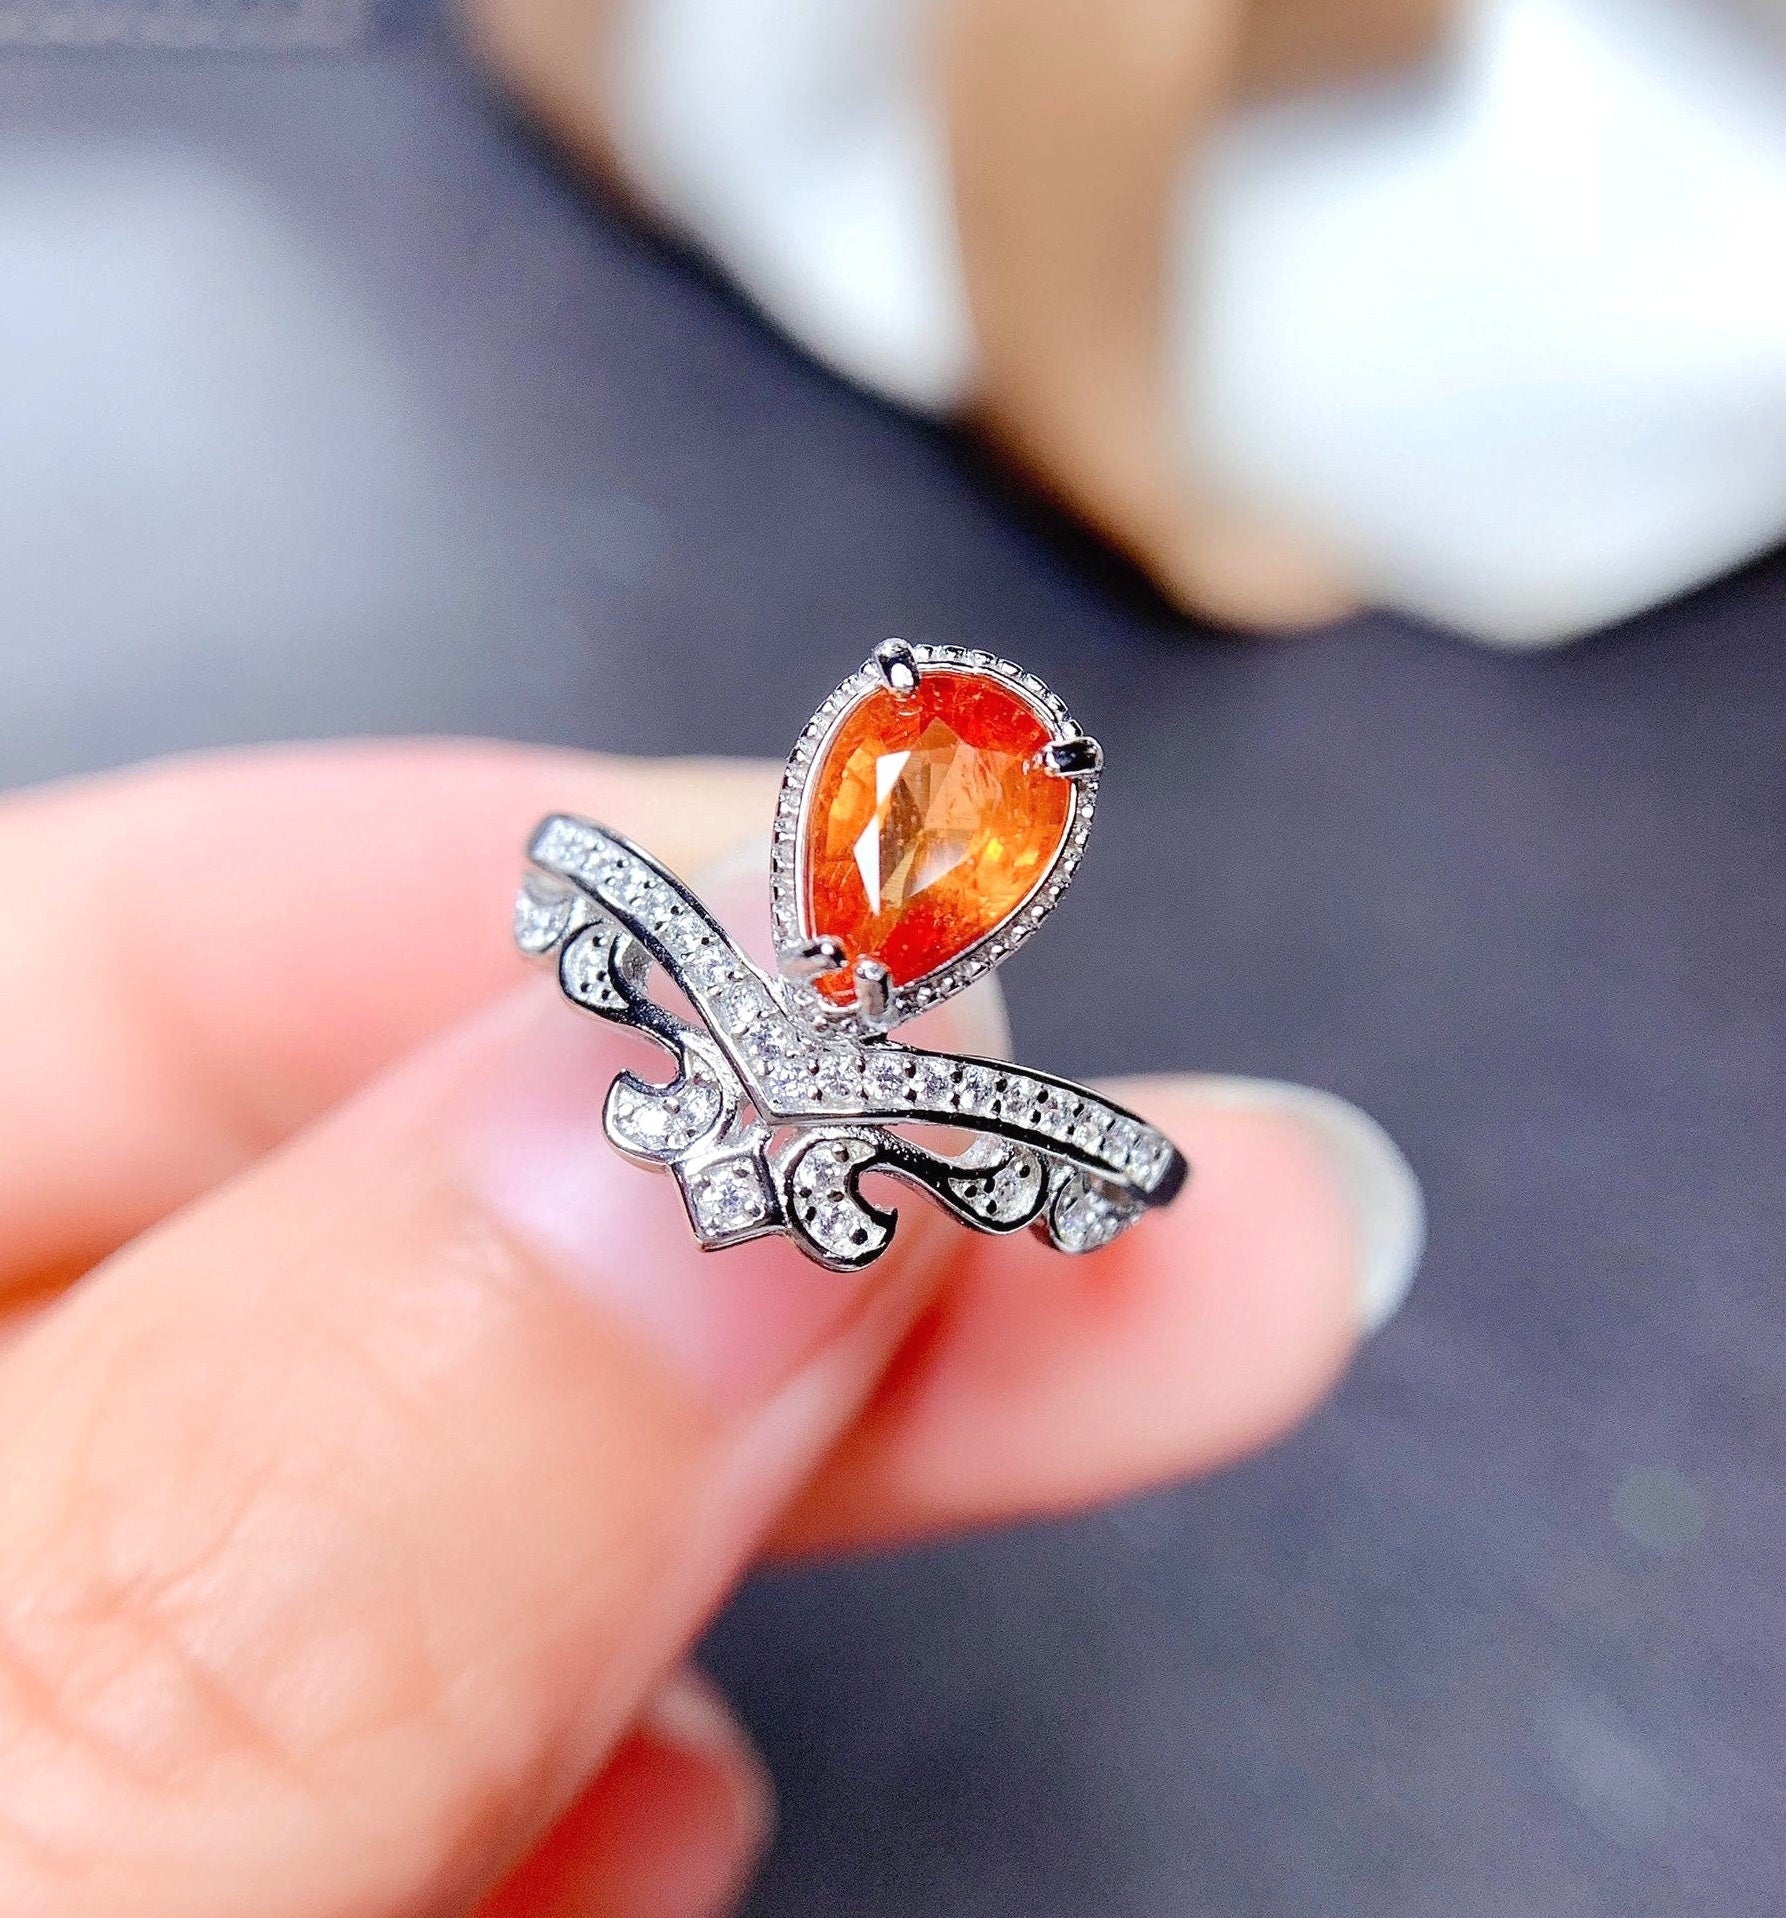 J286 Natural Fanta Garnet Ring, January Birthstone, Sterling Silver Rings, Handmade Engagement Gift For Women Her